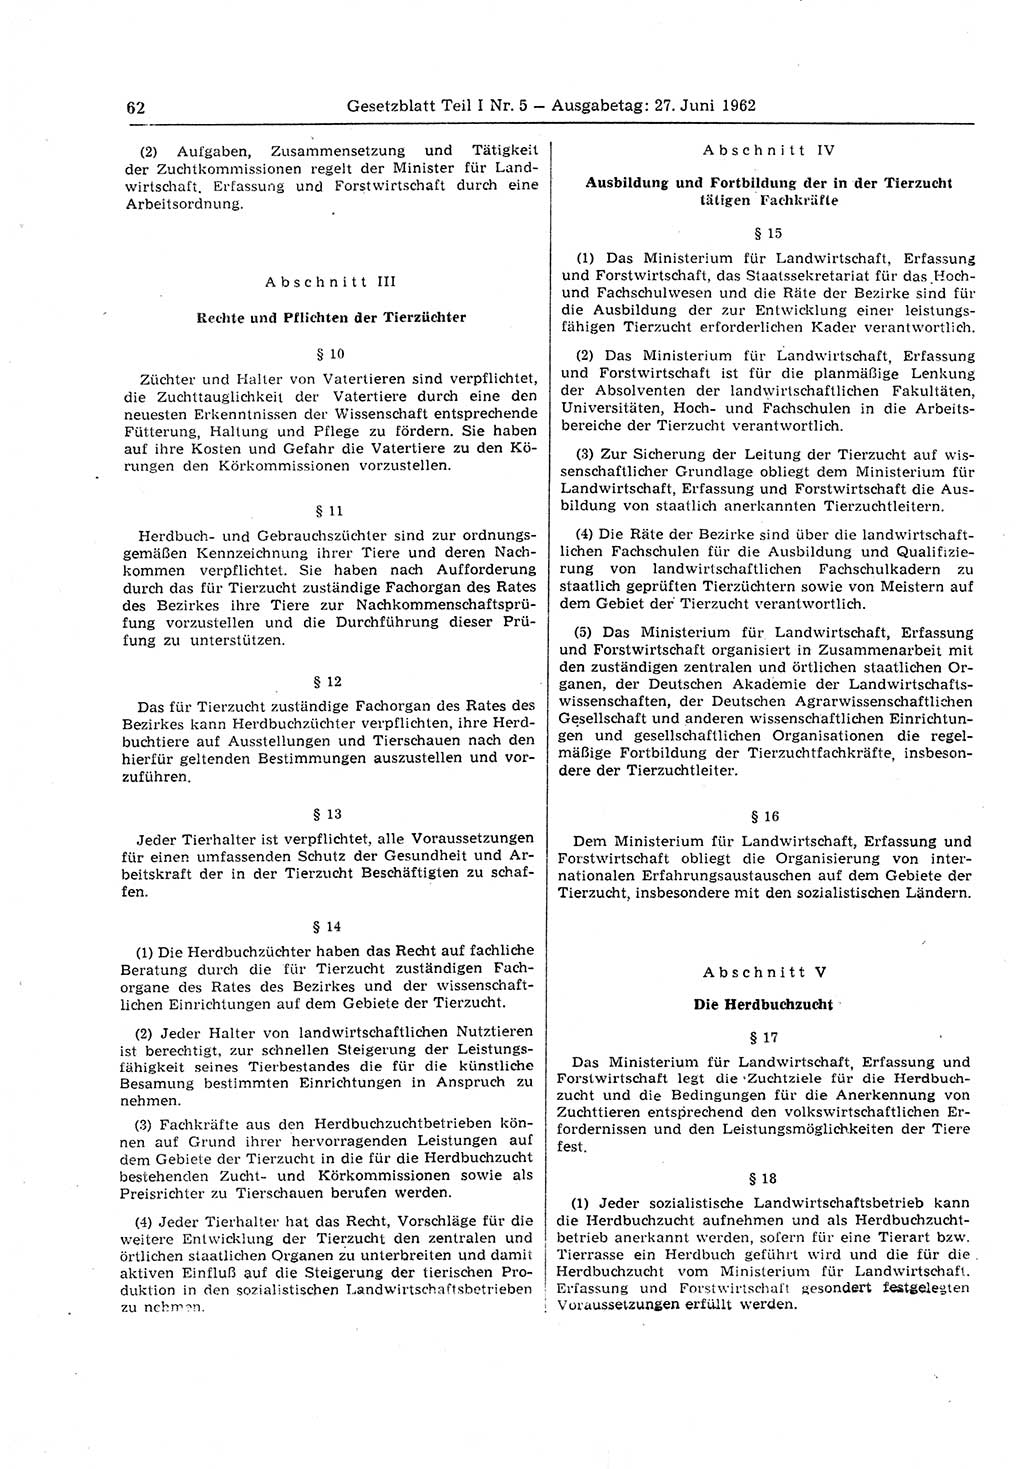 Gesetzblatt (GBl.) der Deutschen Demokratischen Republik (DDR) Teil Ⅰ 1962, Seite 62 (GBl. DDR Ⅰ 1962, S. 62)